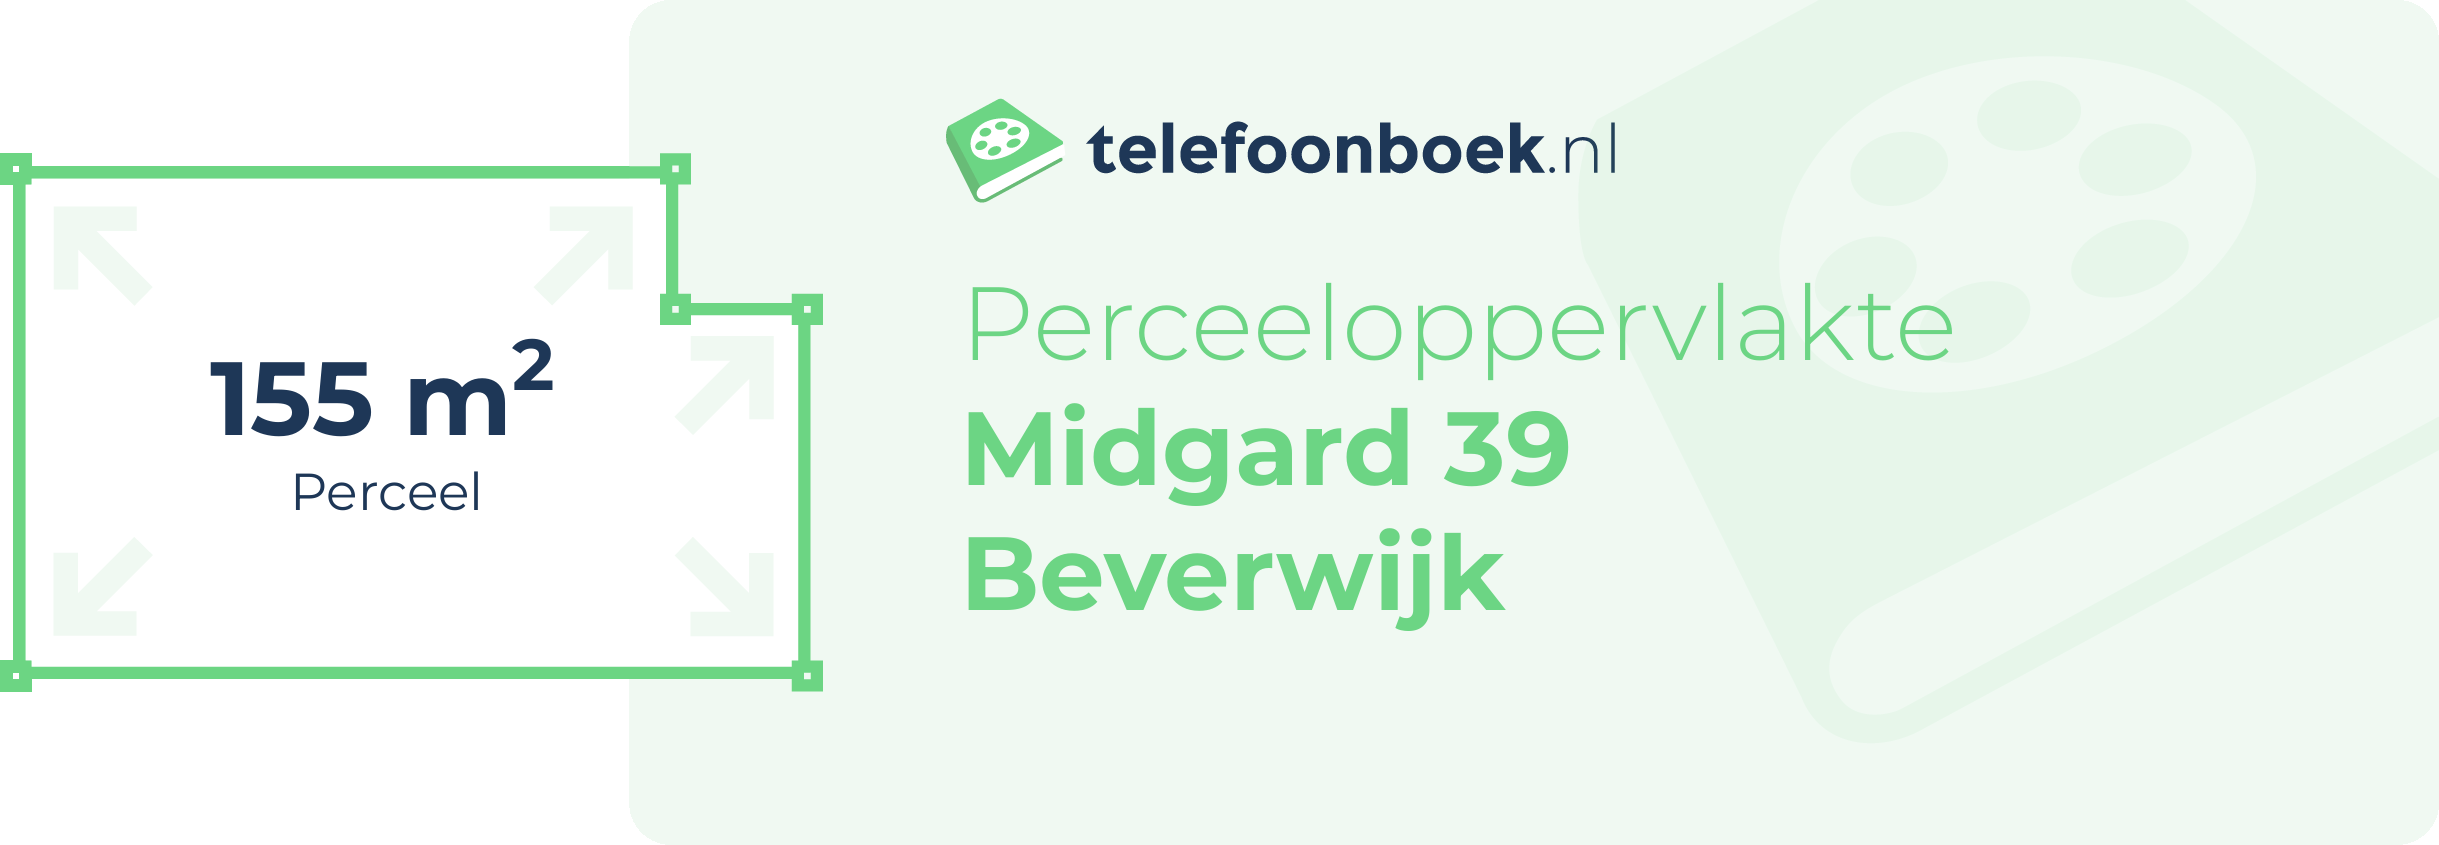 Perceeloppervlakte Midgard 39 Beverwijk